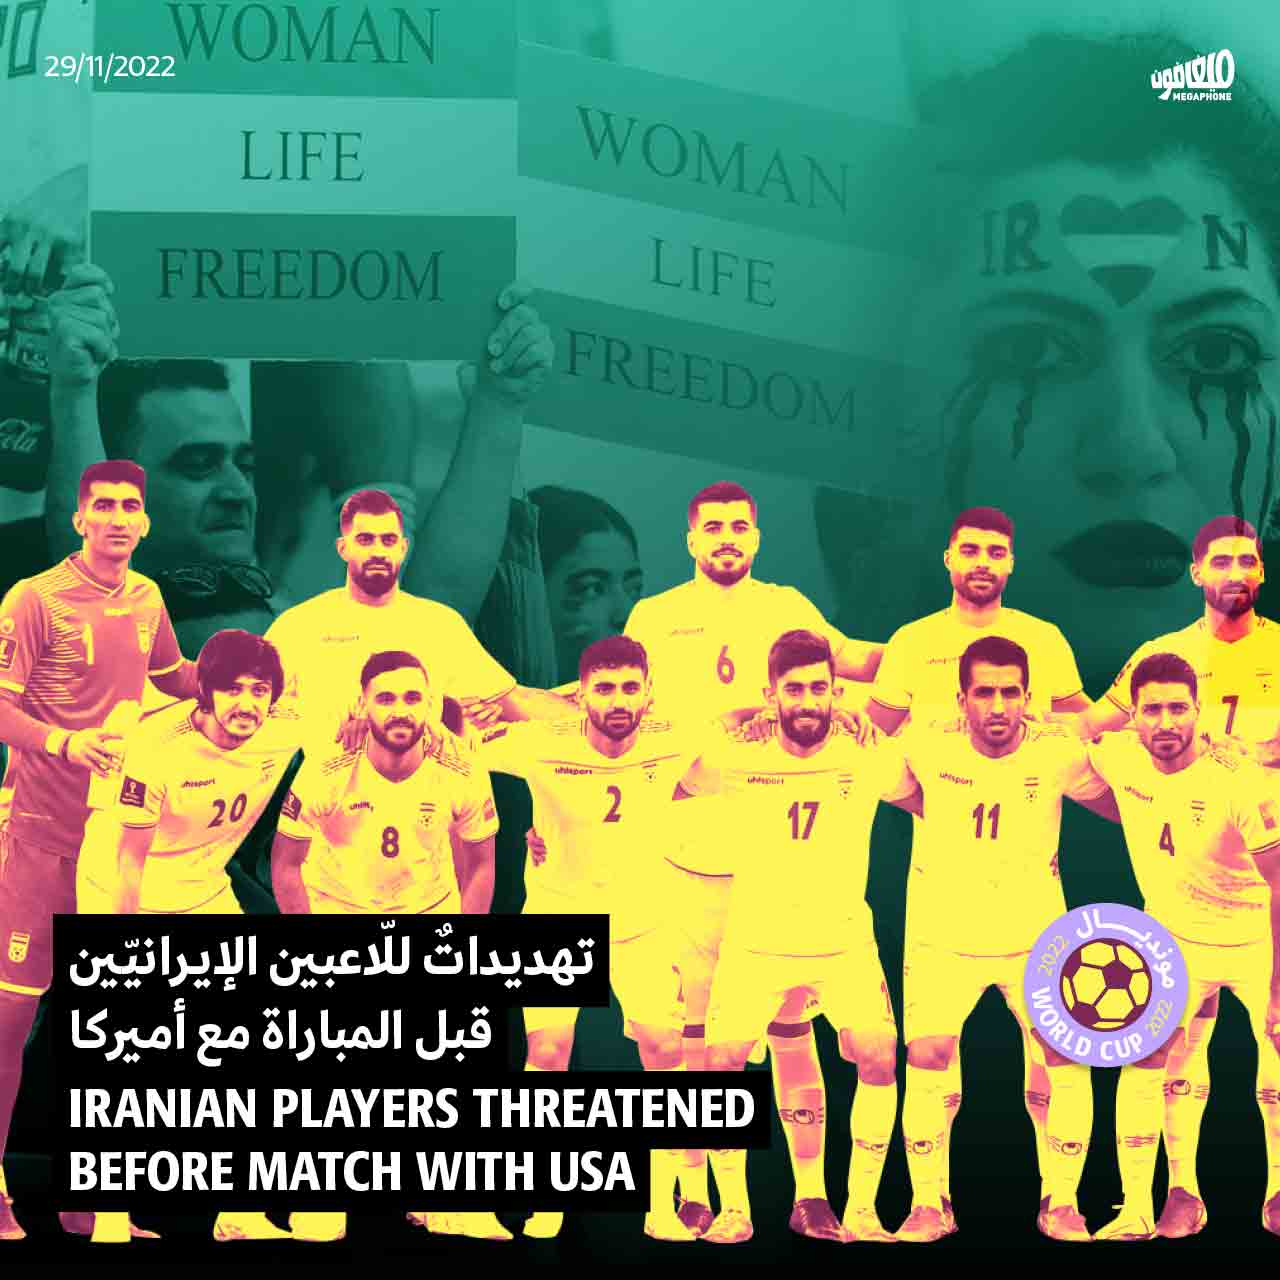 تهديداتٌ للّاعبين الإيرانيّين قبل المباراة مع أميركا